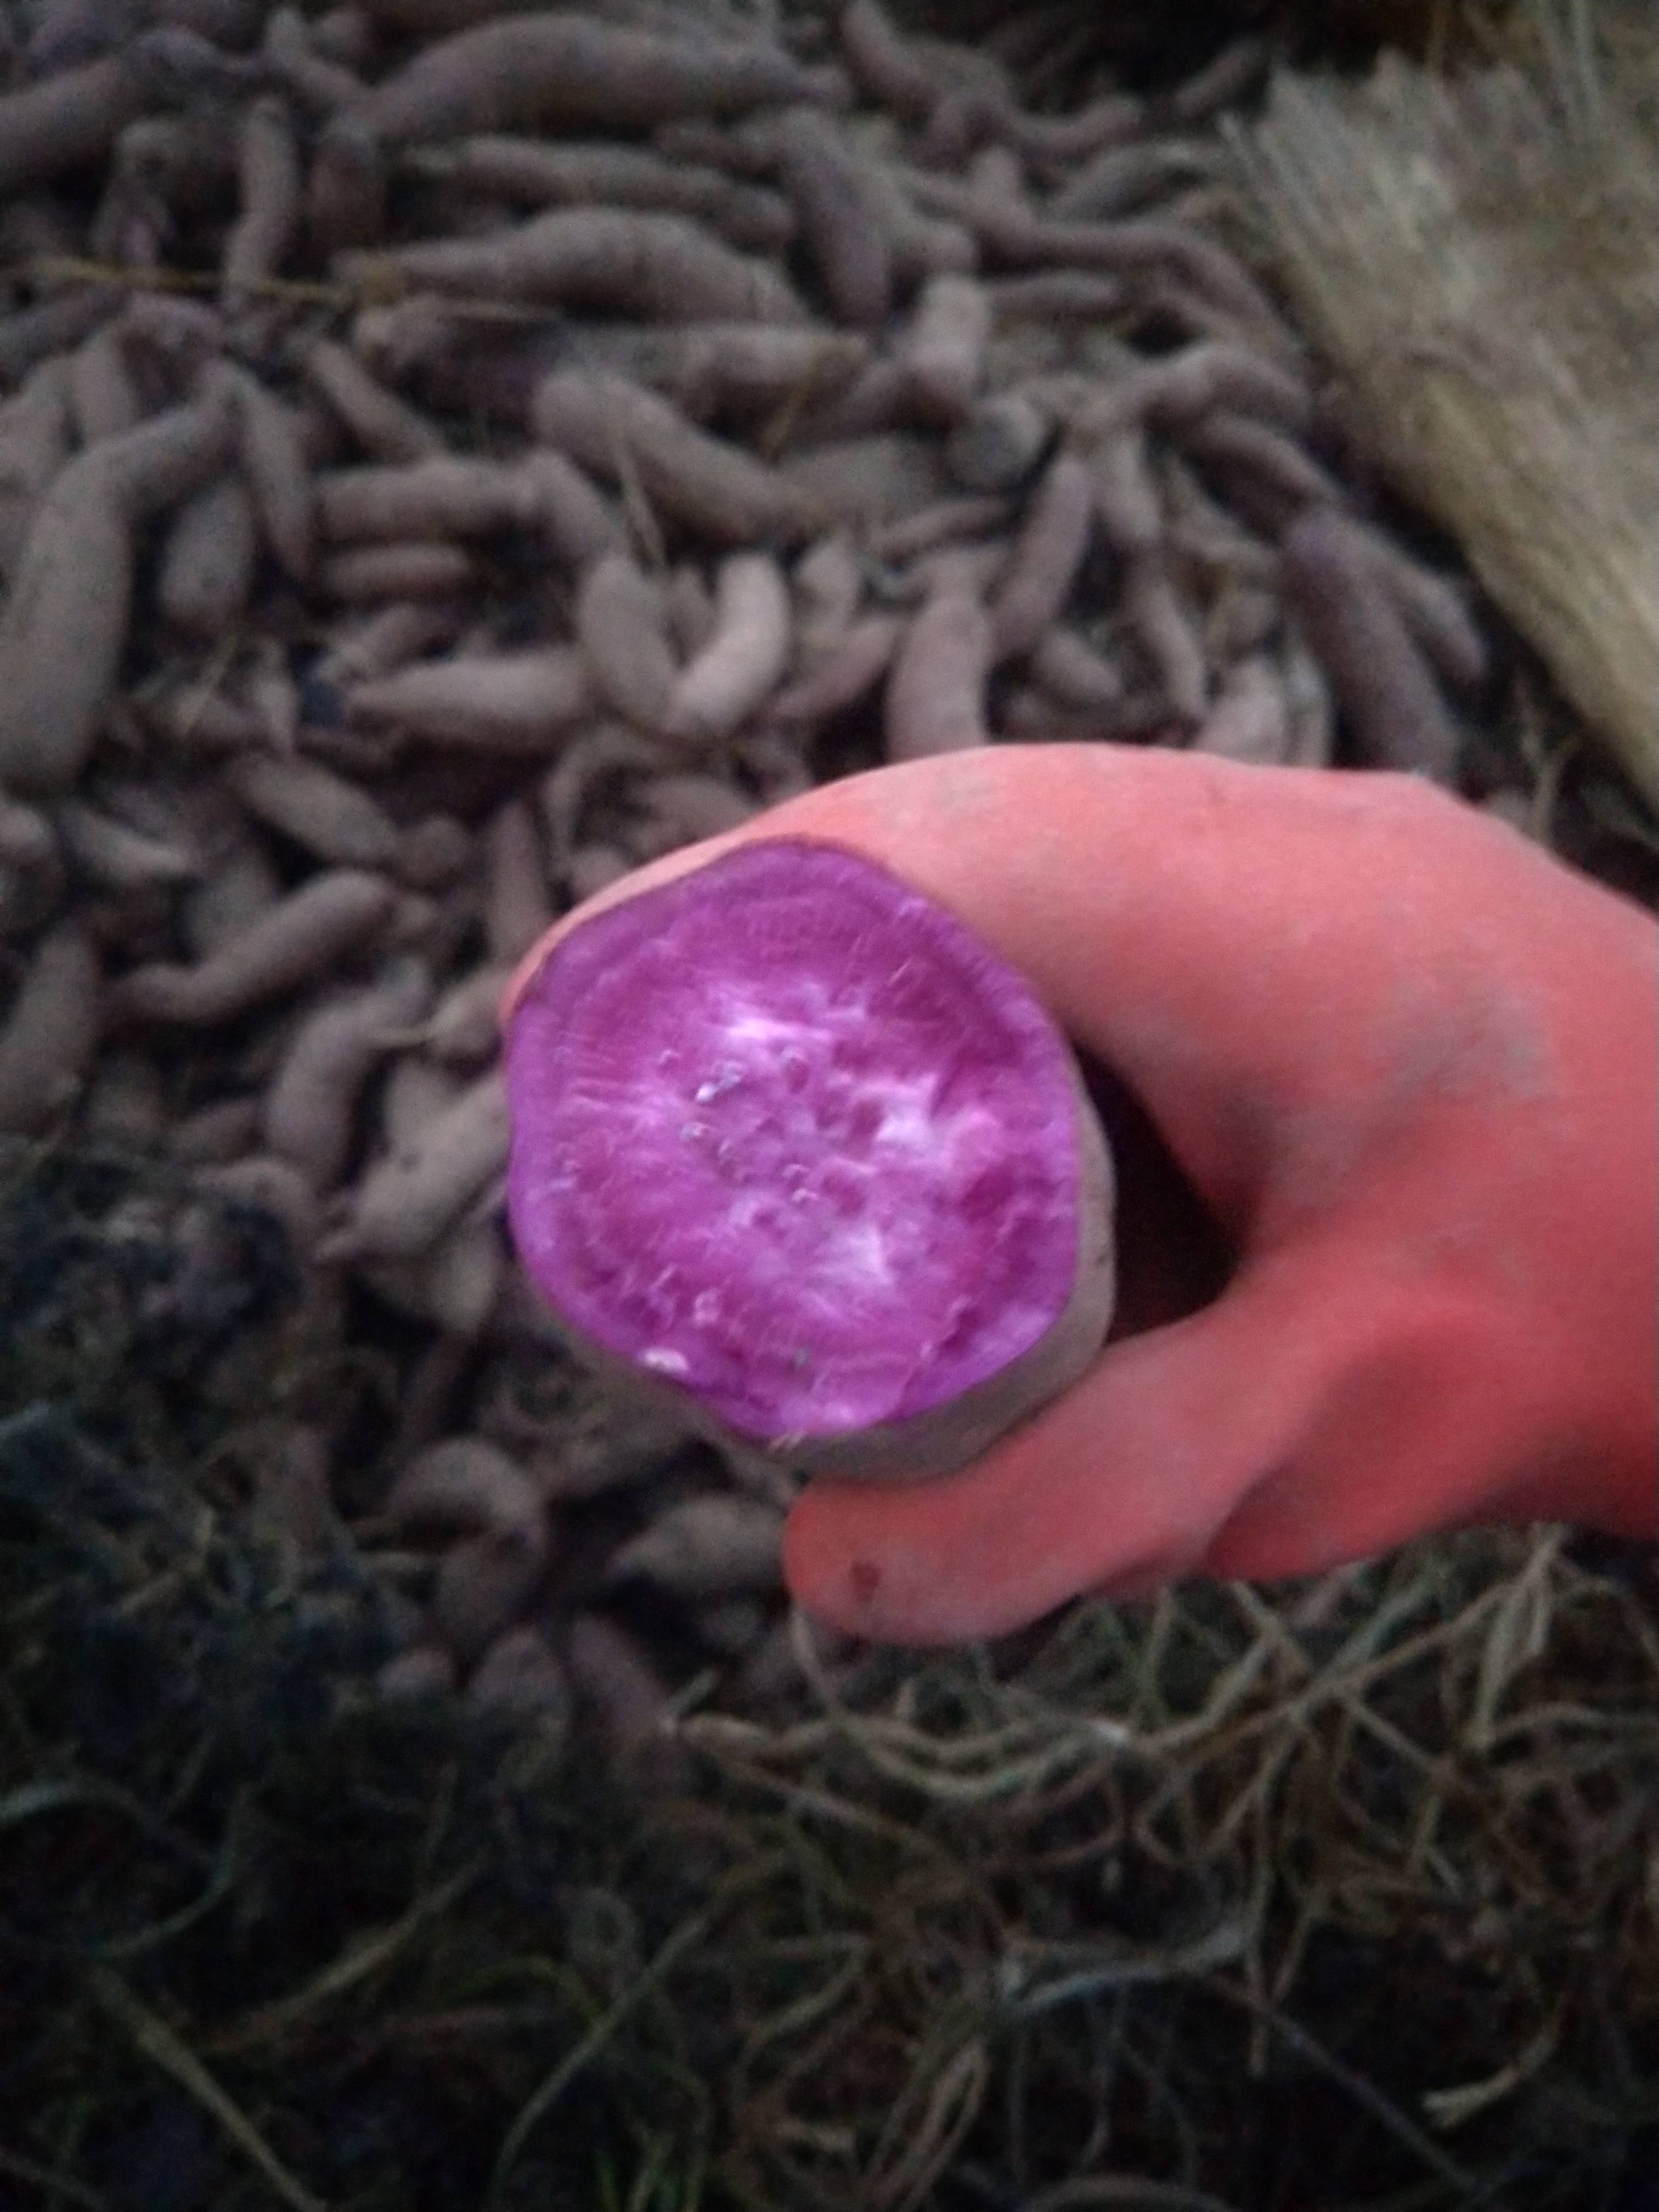 出售紫薯六千斤